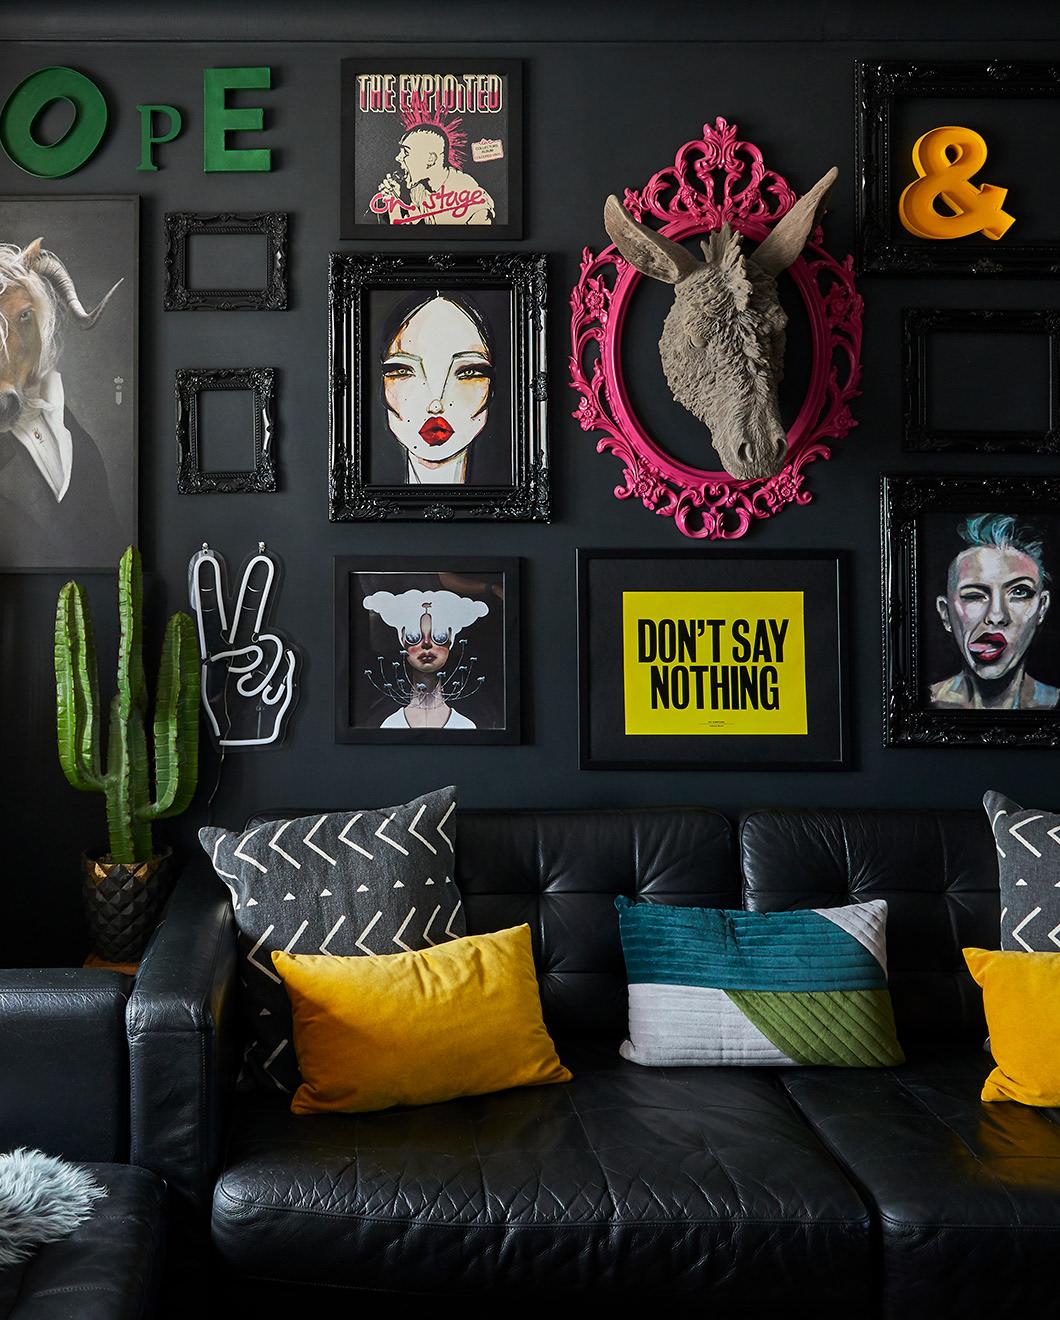 Inspirational living room decor ideas